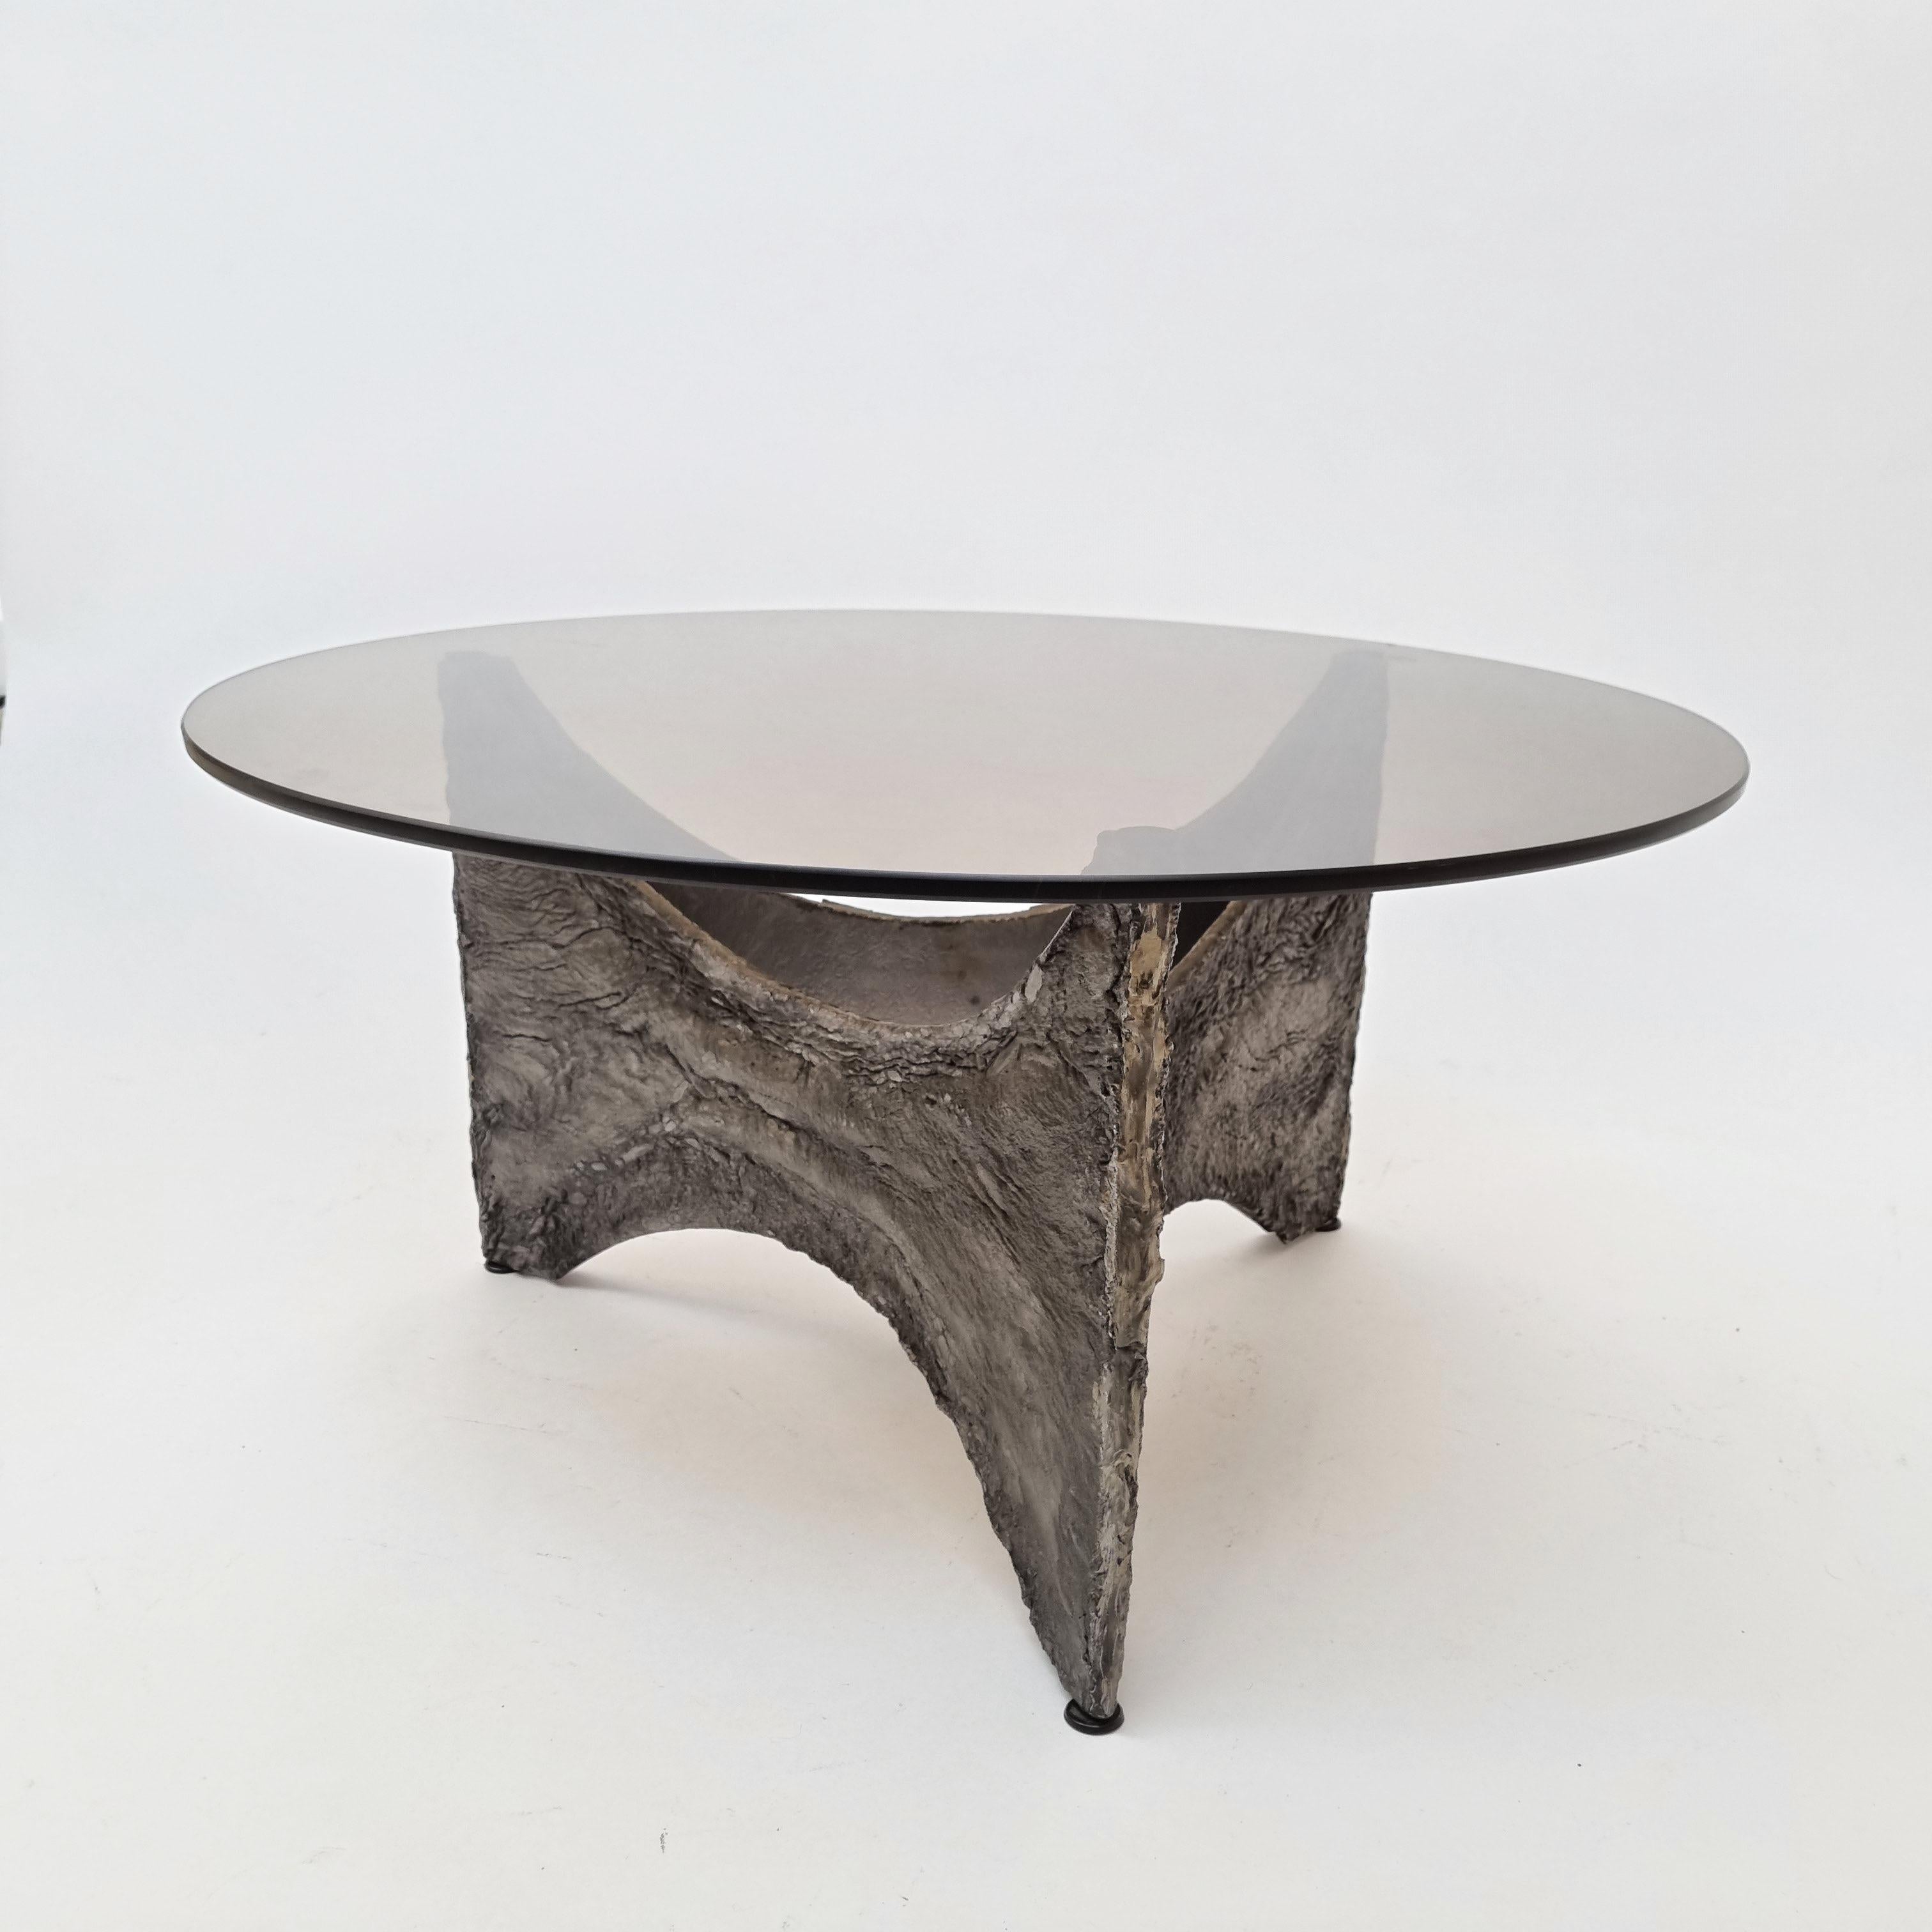 Cette table basse brutaliste est fabriquée dans un style qui rappelle les designs de Paul Evans. Il a été fabriqué en Belgique, vers 1960. La base de la table est composée de fonte d'aluminium avec une texture rugueuse. Le plateau est en verre fumé,